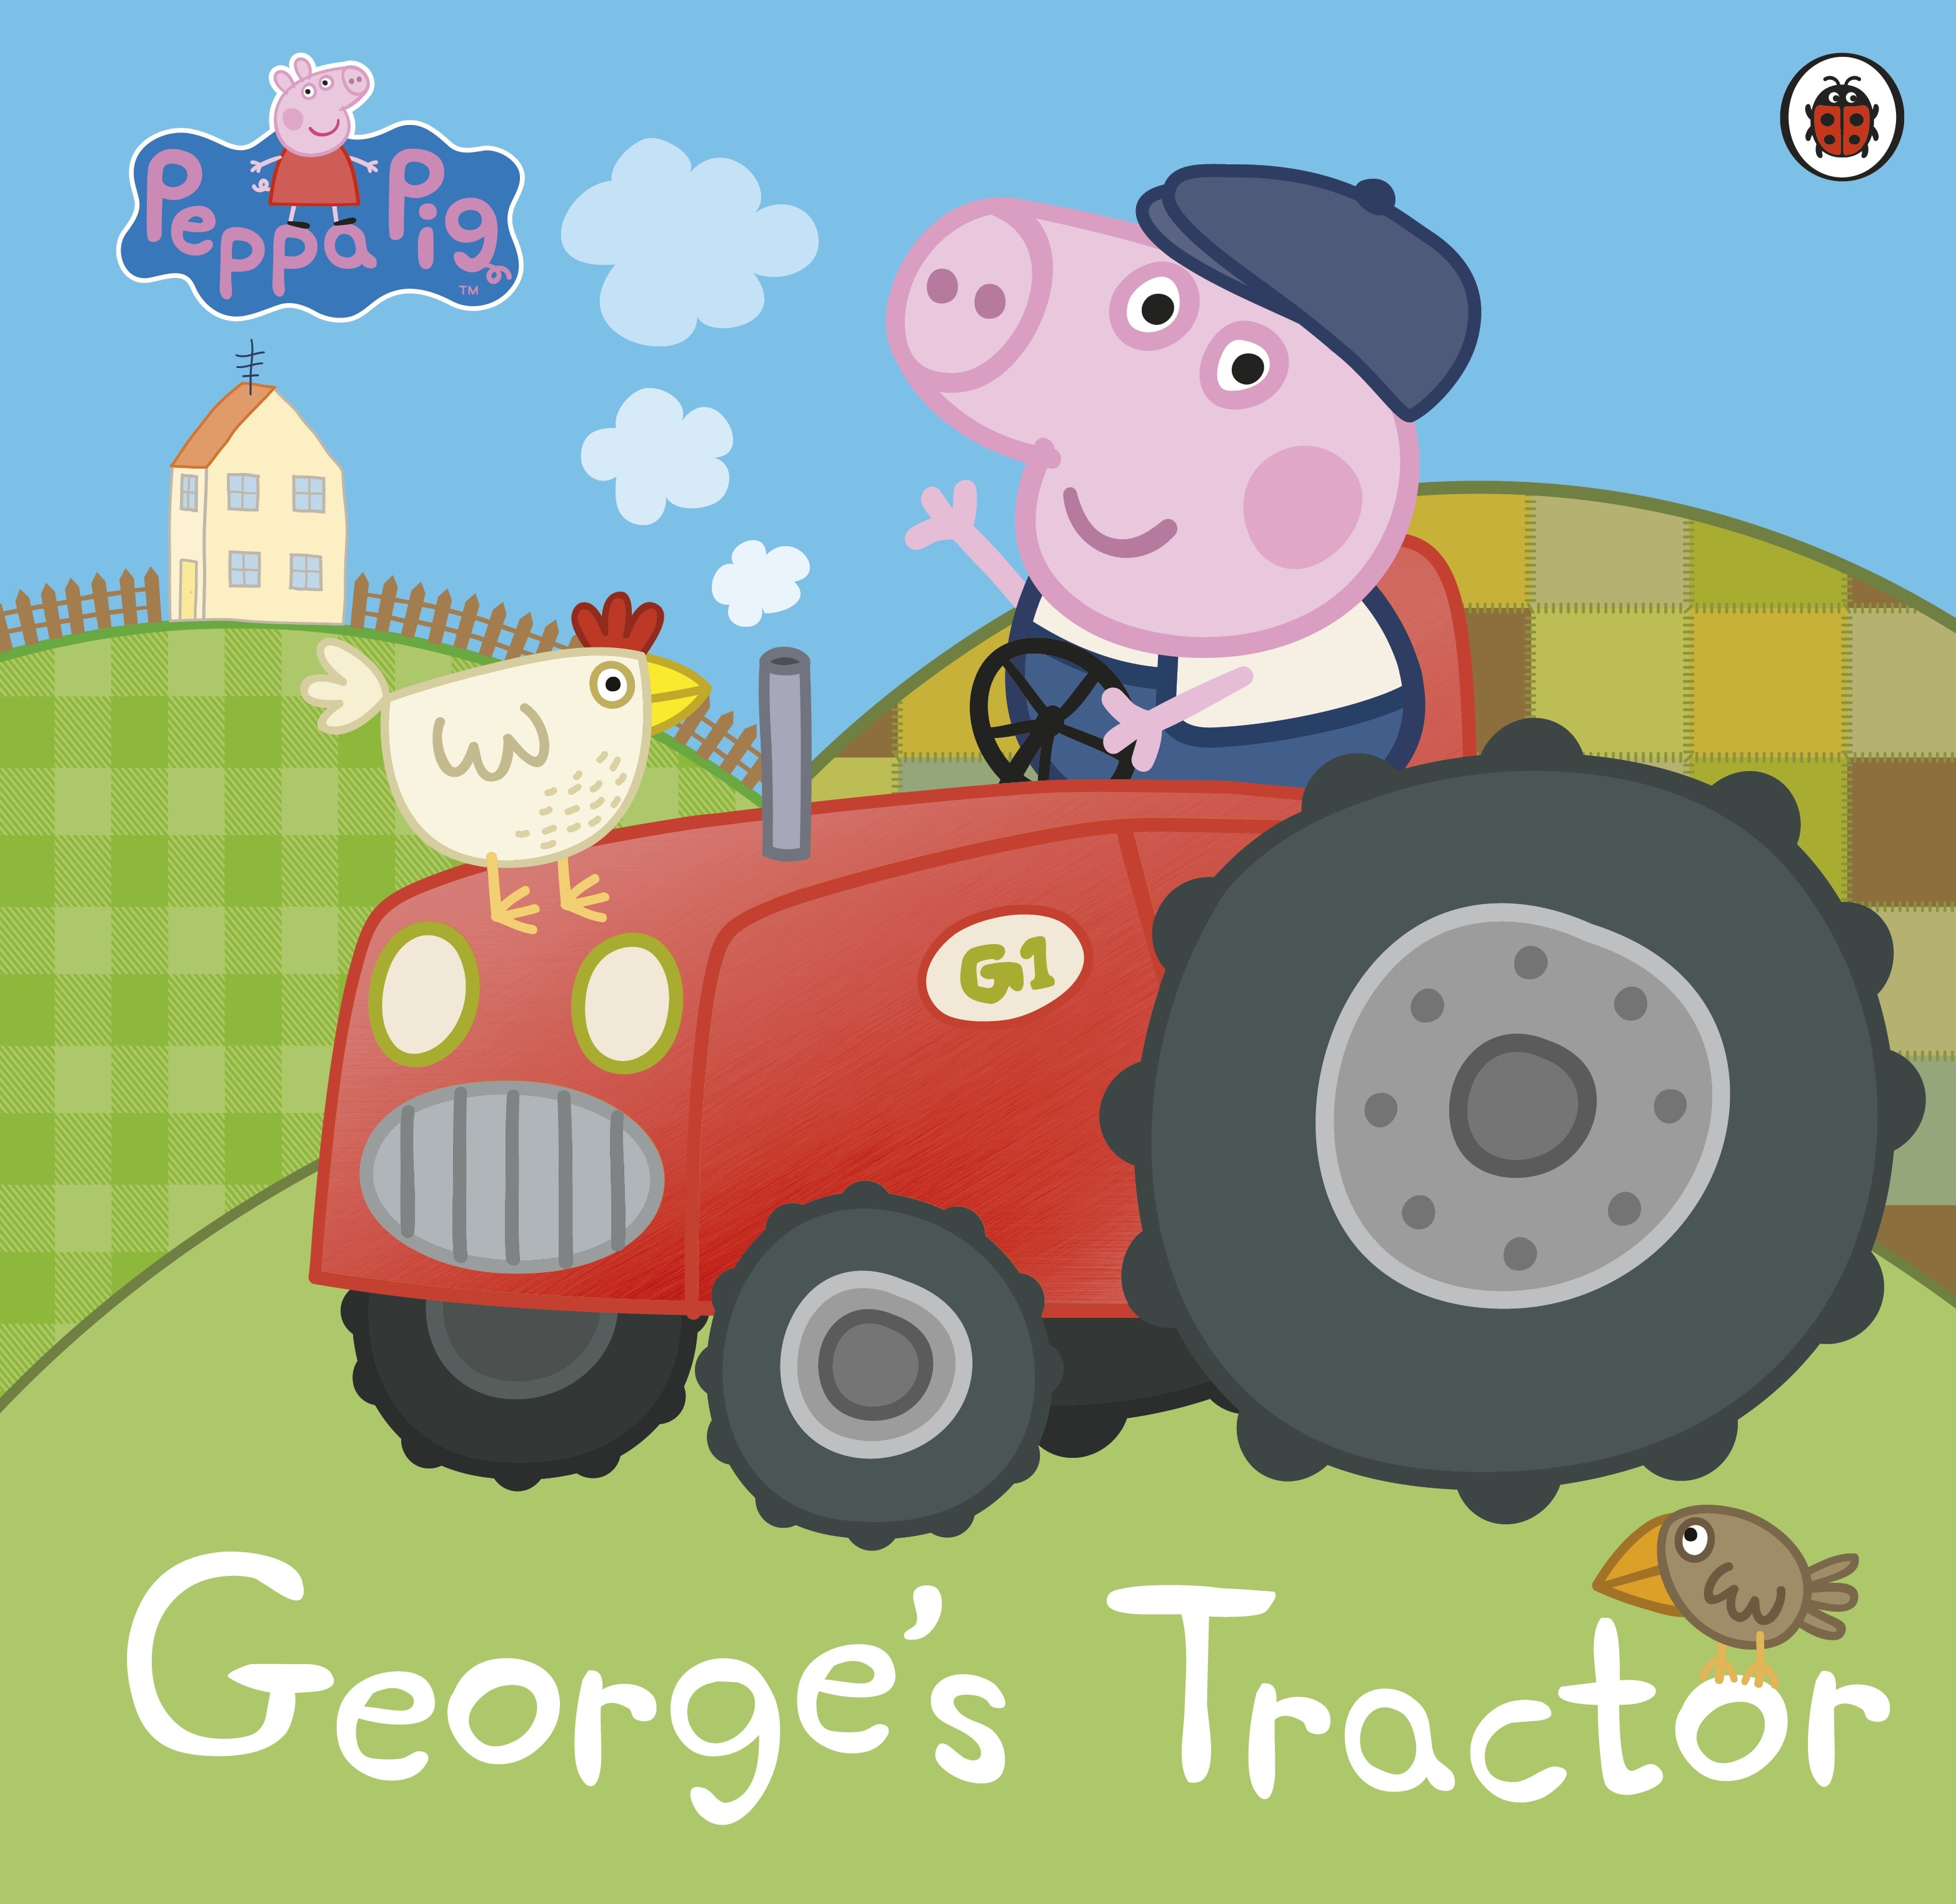 Book “Peppa Pig: George’s Tractor” by Peppa Pig — December 31, 2020